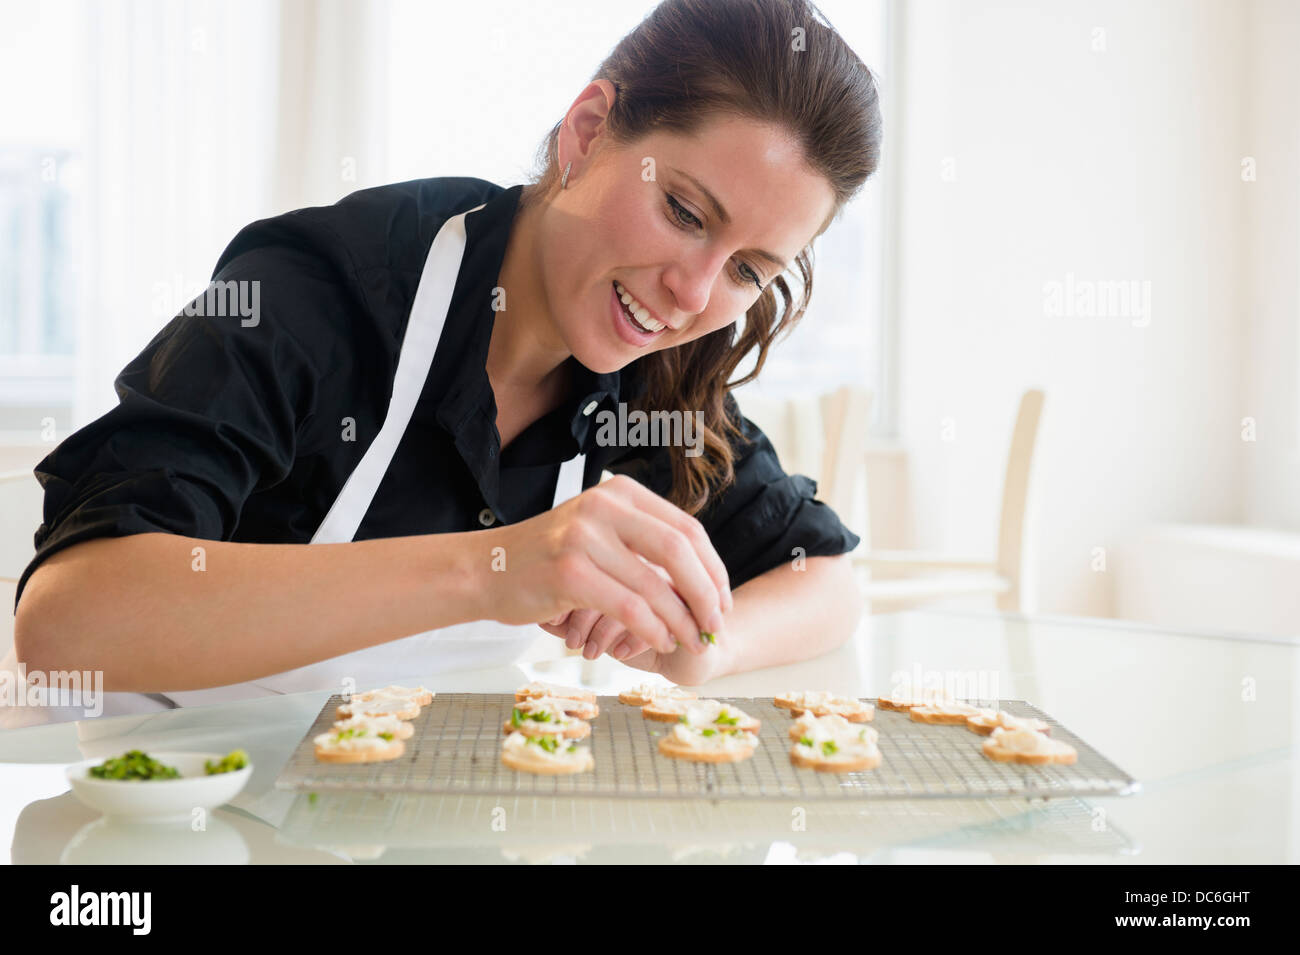 Portrait of woman preparing food Banque D'Images